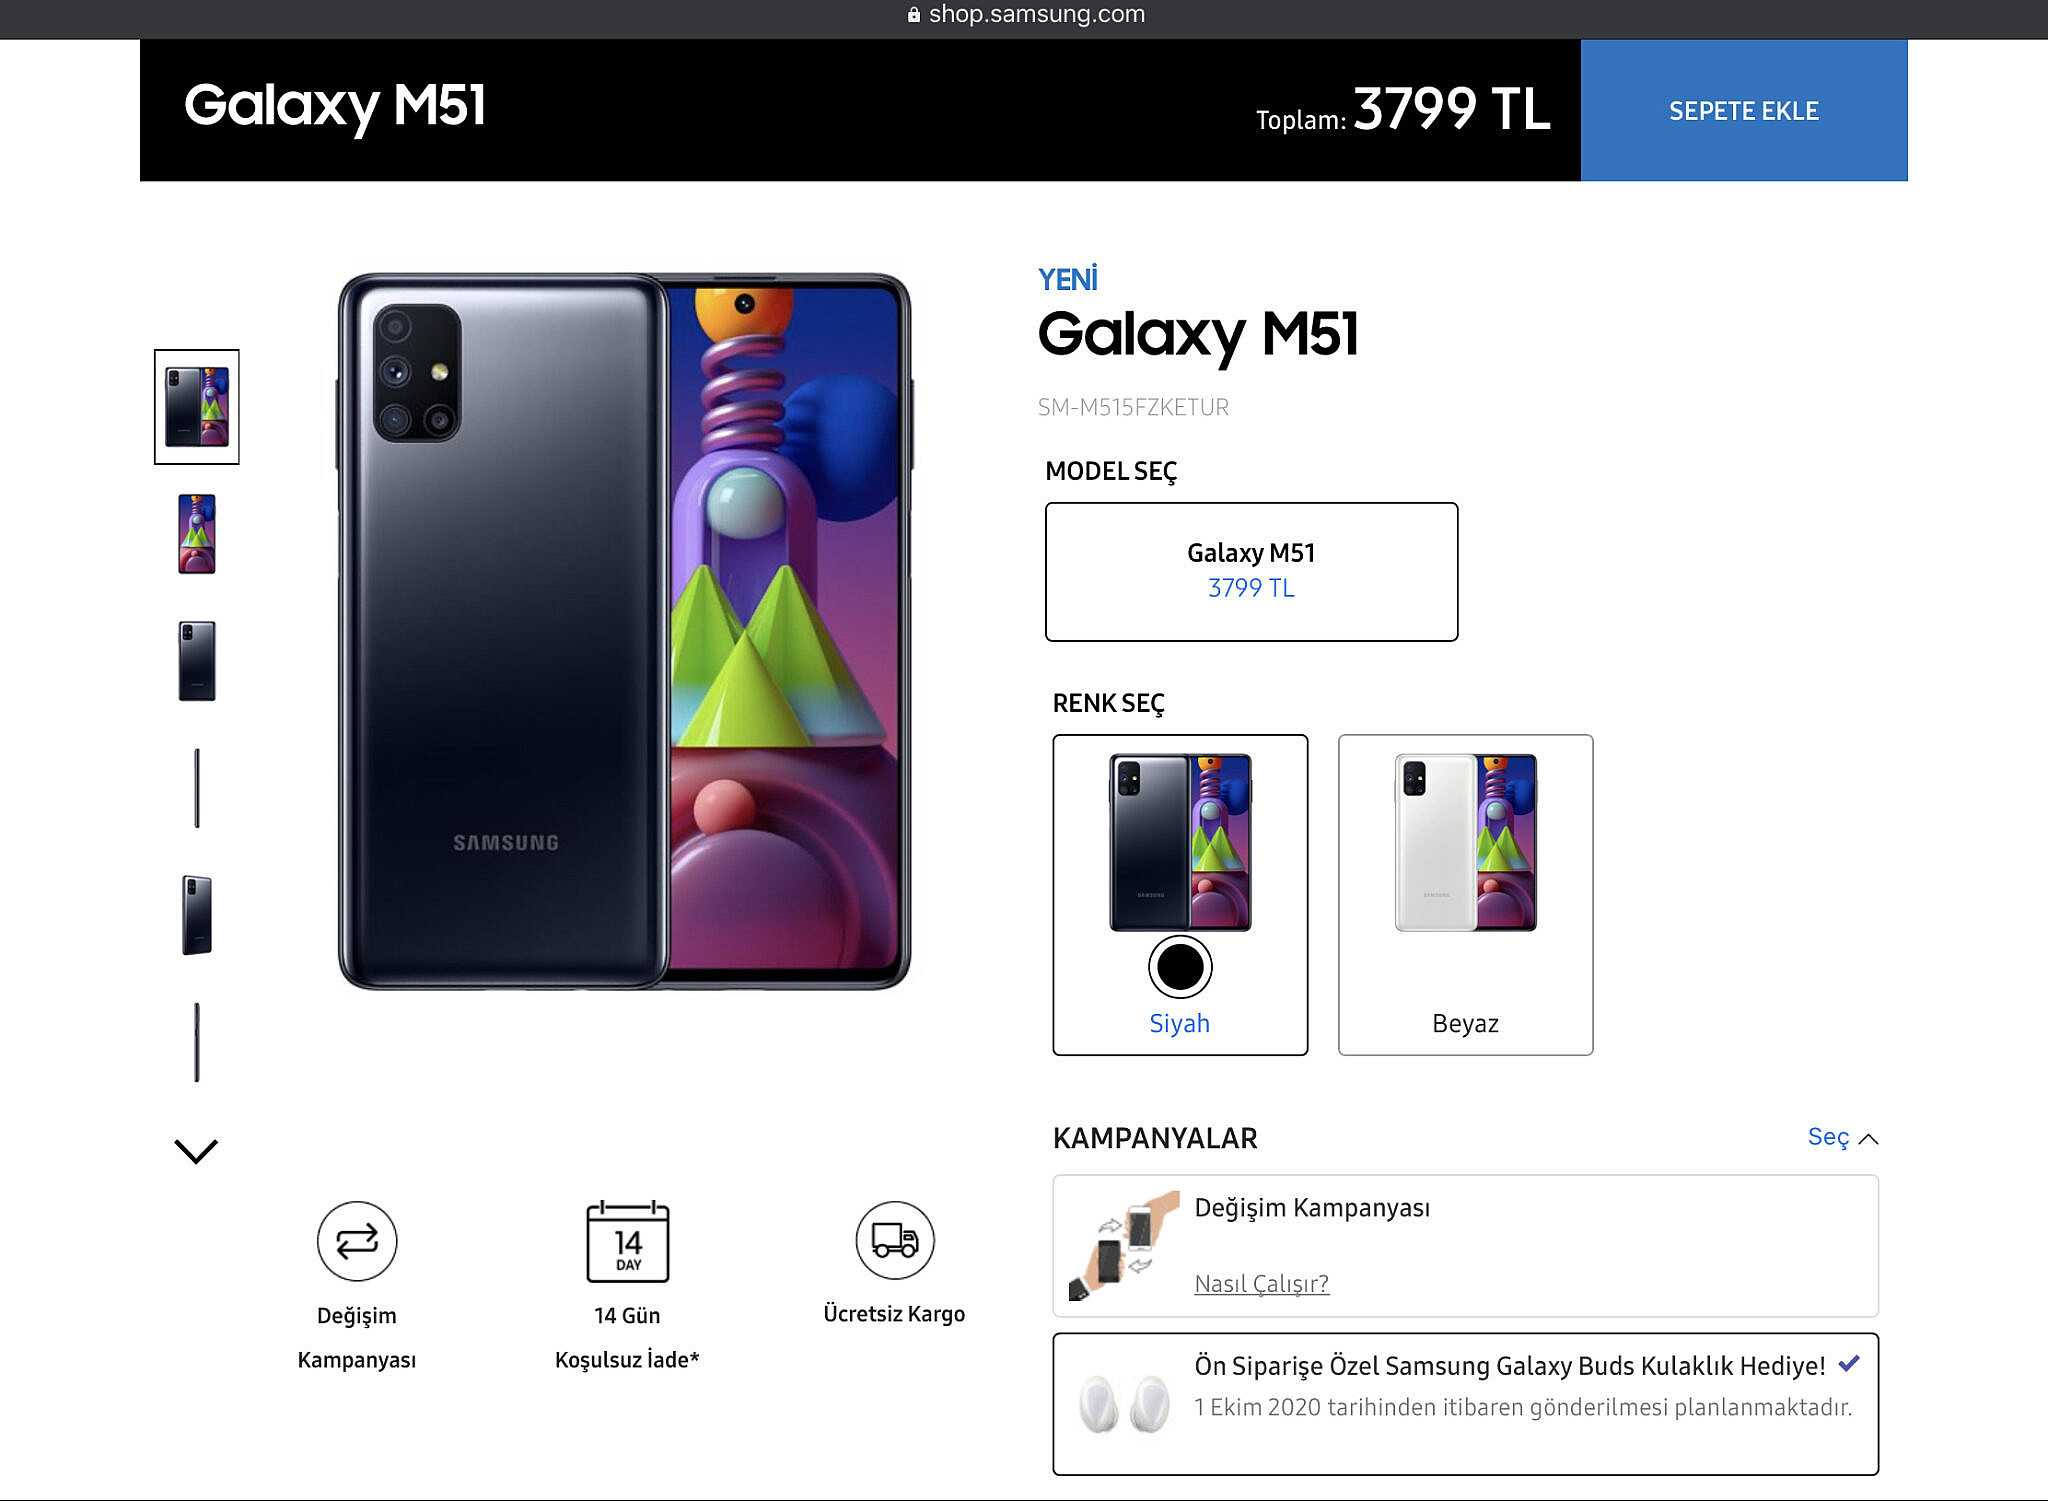 Samsung Galaxy M51 - короткий но максимально информативный обзор Для большего удобства добавлены характеристики отзывы и видео